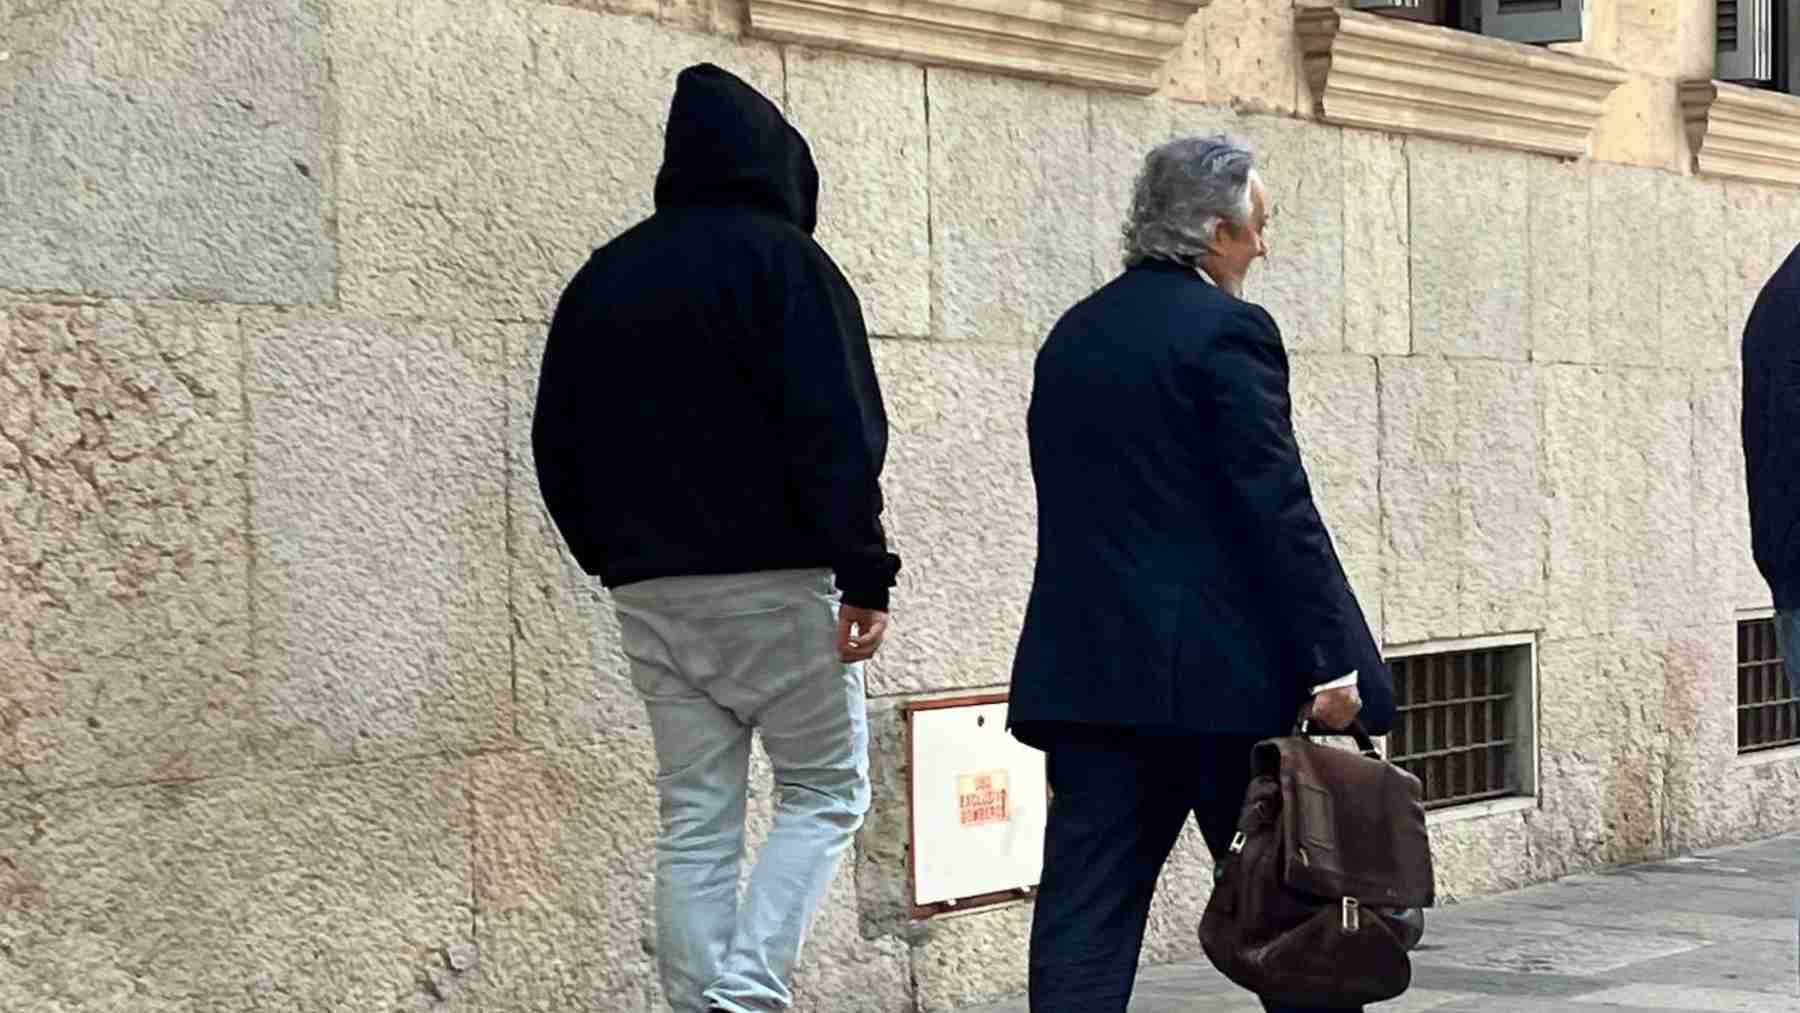 El entrenador de baloncesto acusado de abusos a menores en Mallorca, saliendo de la Audiencia Provincial junto a su abogado, Gaspar Oliver. EUROPA PRESS